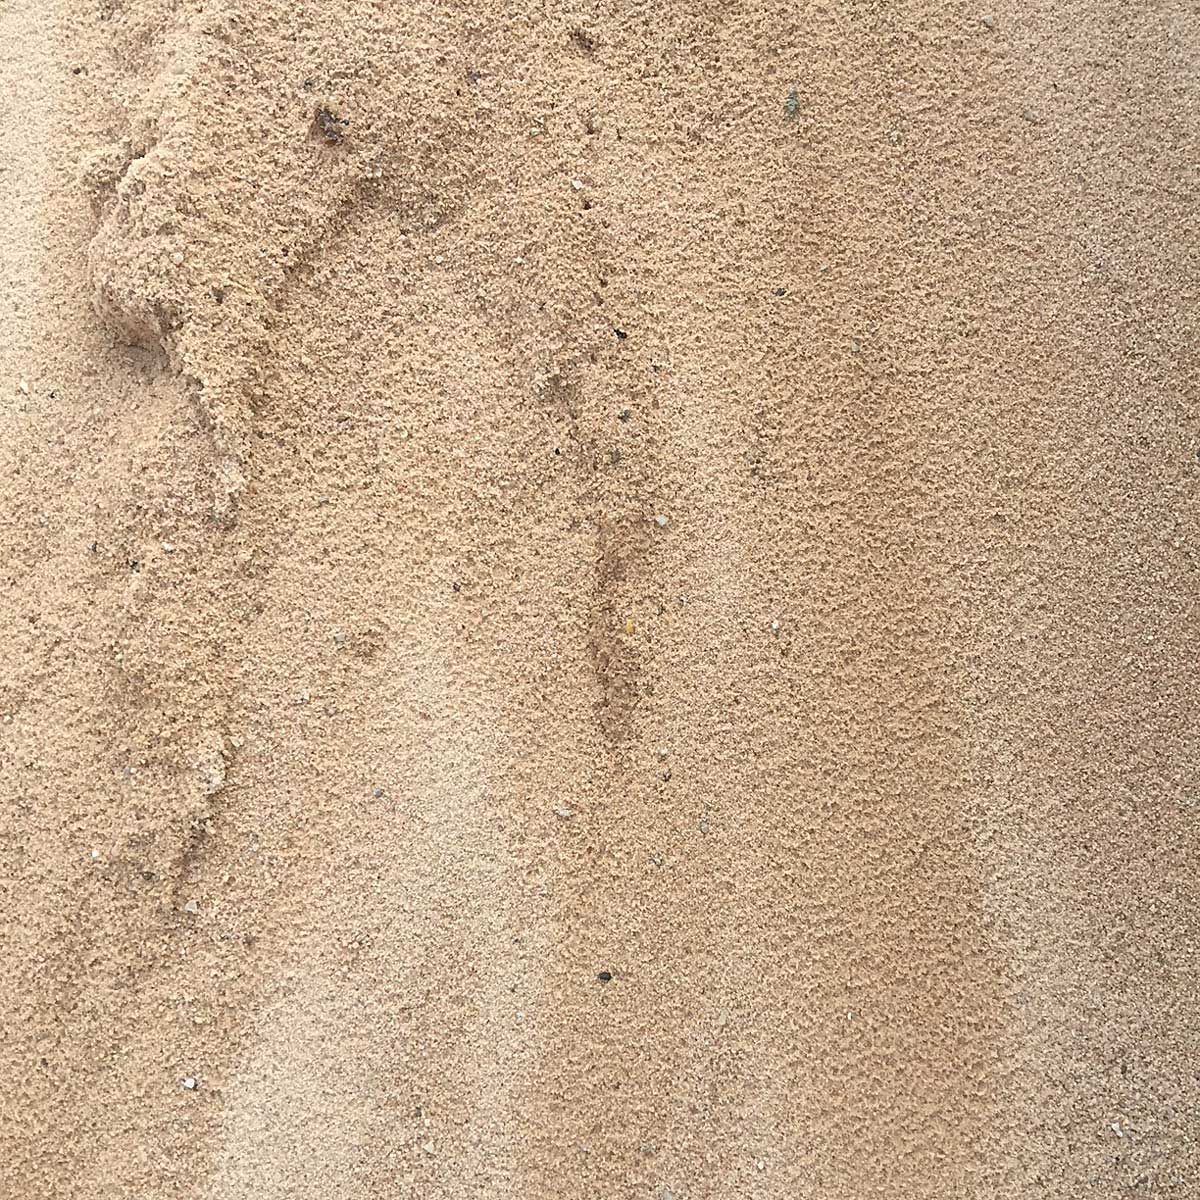 Baustoffe Schlemmer Sand 0 02mm